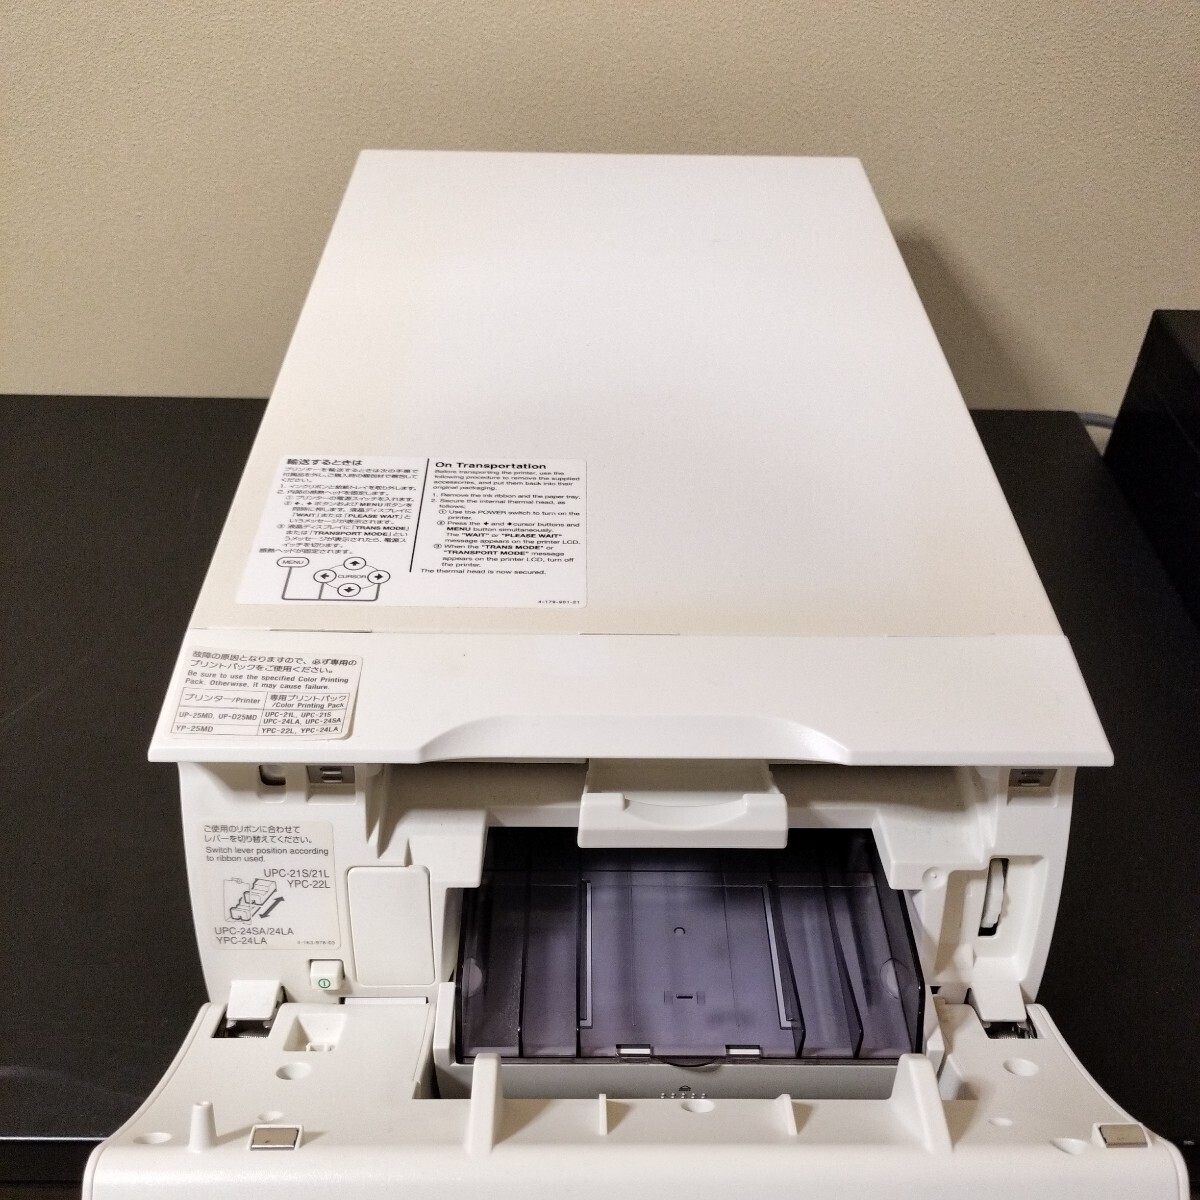 SONY Sony UP-25MD цвет видео принтер medical принтер медицинская помощь принтер рабочее состояние подтверждено 